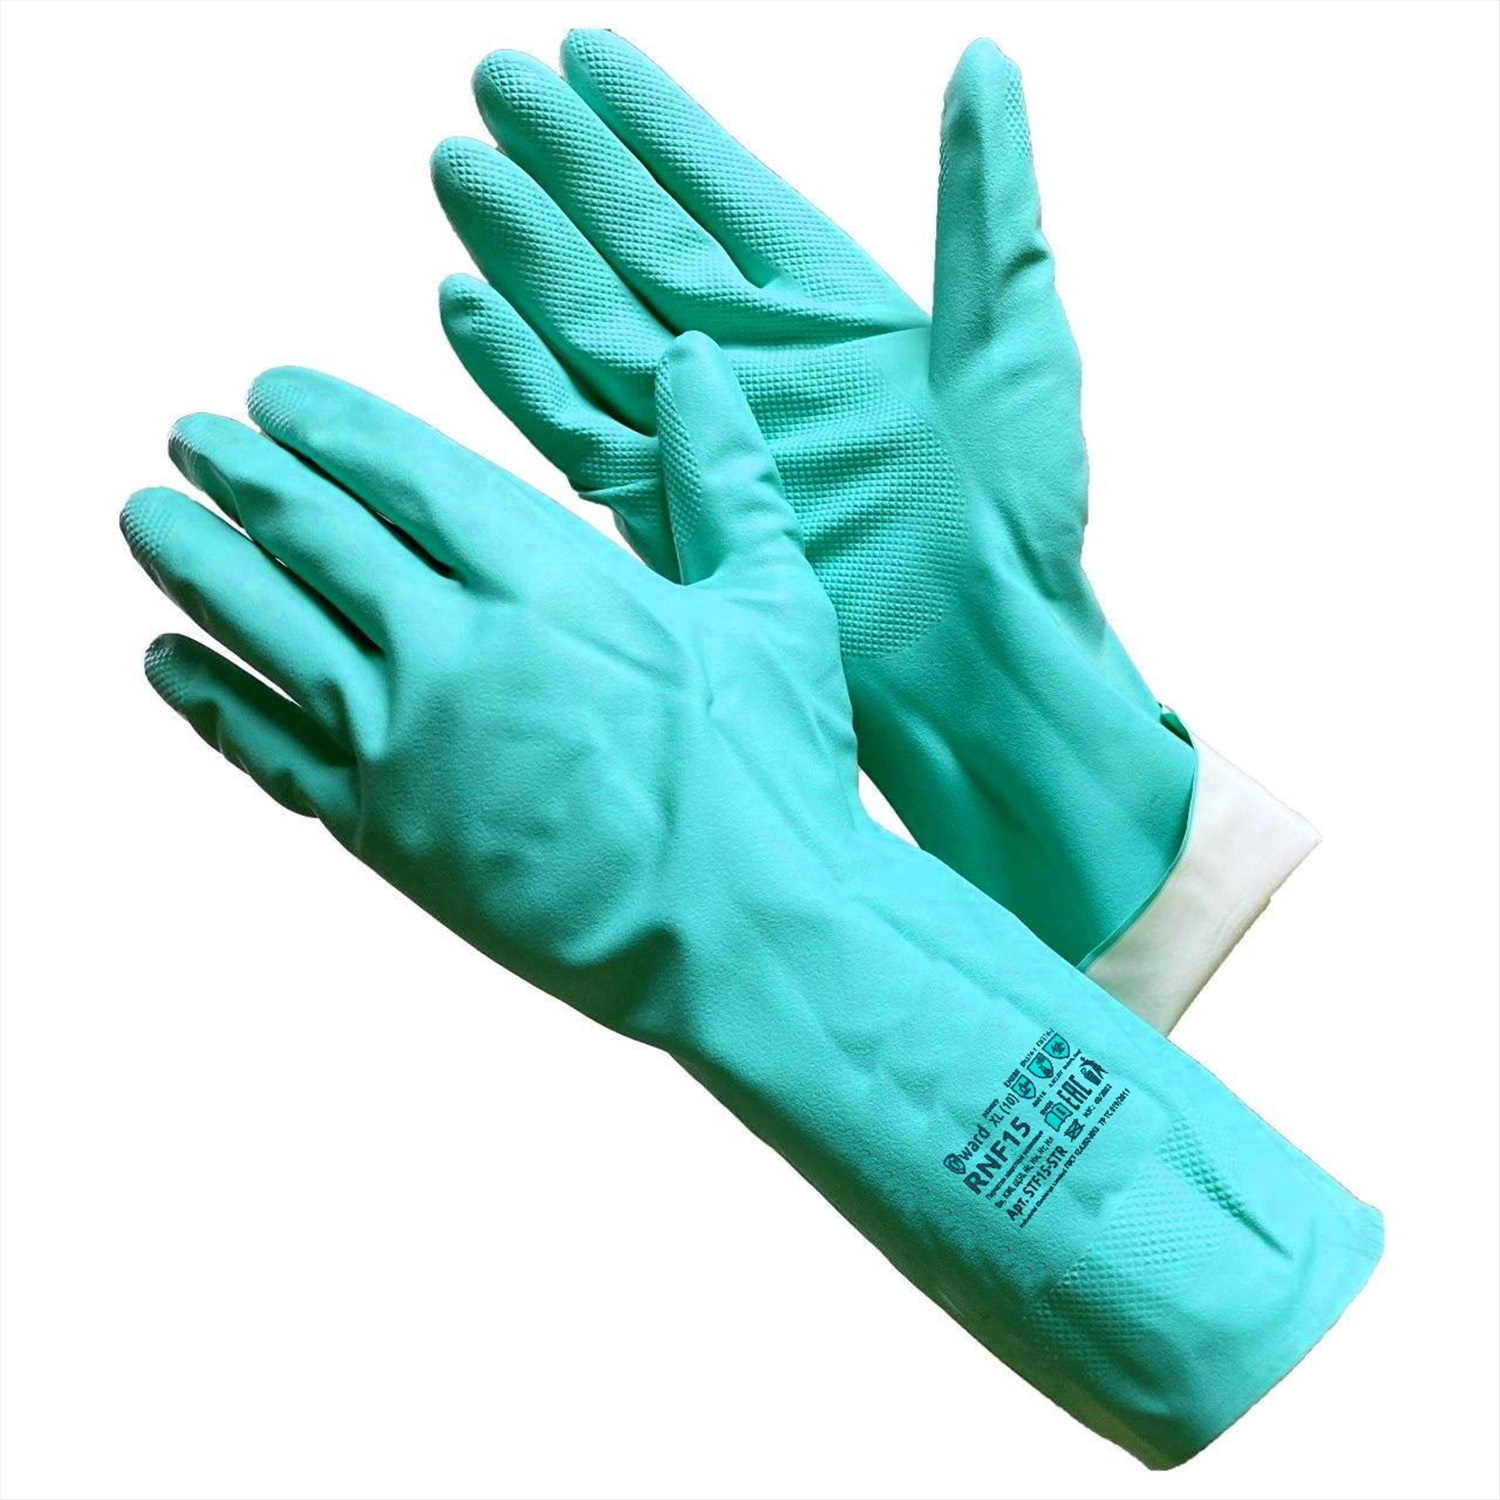 Купить перчатку самара. Перчатки gward rnf15. Rnf15 (stf15-Str) промышленные нитриловые перчатки, стойкие к химии. Перчатки защитные cet ke1471. Перчатки КЩС gward hp300 (10).